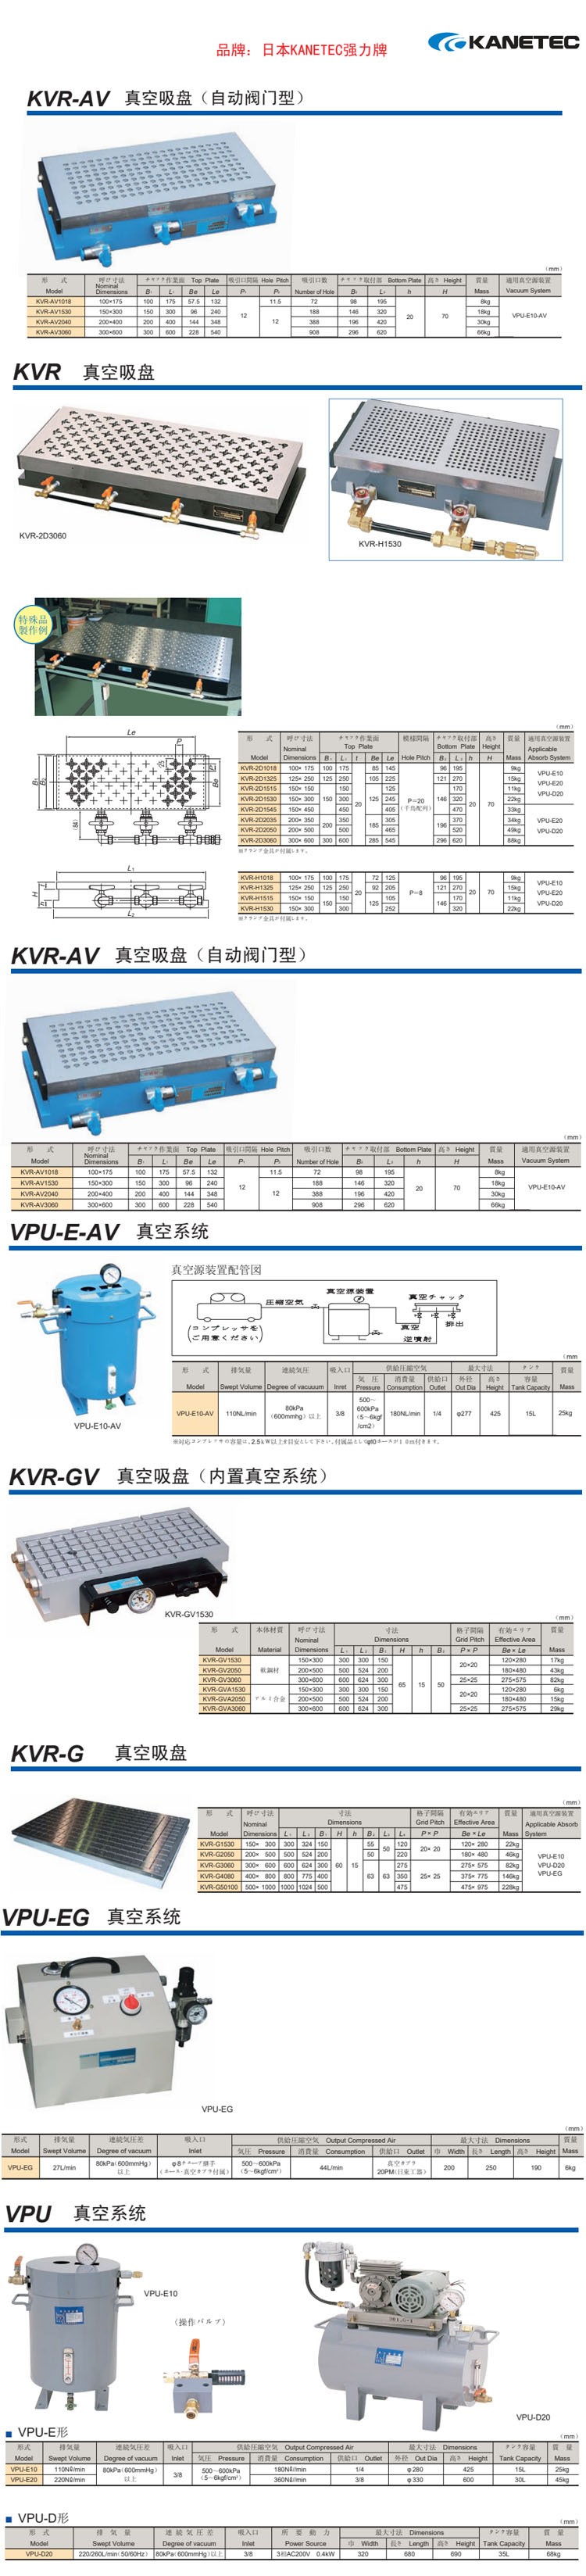 日本 KANETEC 真空电磁吸盘 CNC加工铣床 车床KVR VPU VPU-EG